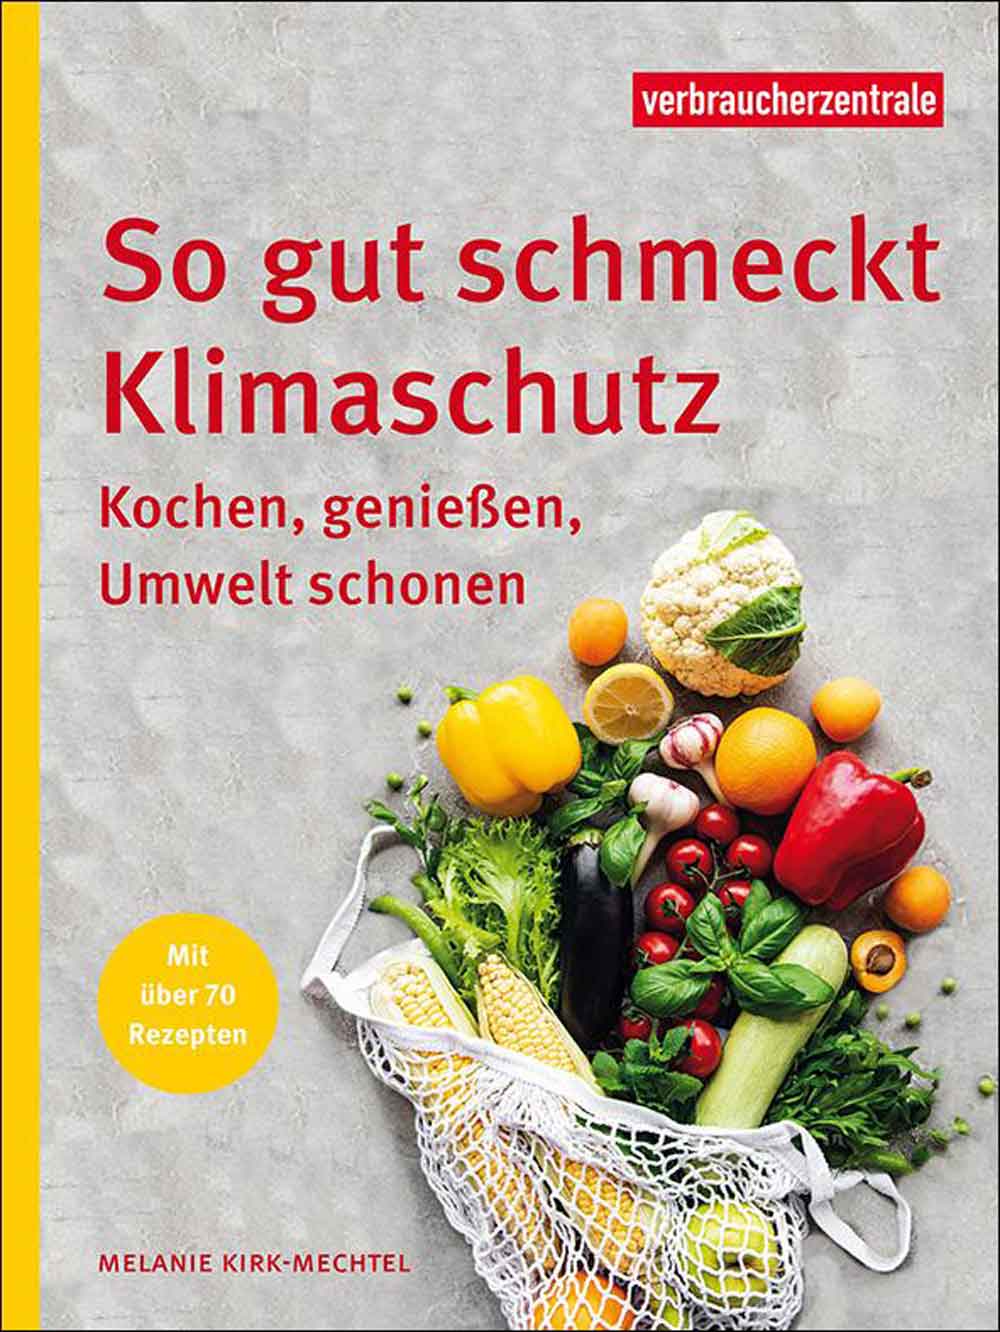 Verbraucherzentrale NRW: Mit gutem Gewissen essen, neuer Ratgeber »So gut schmeckt Klimaschutz«